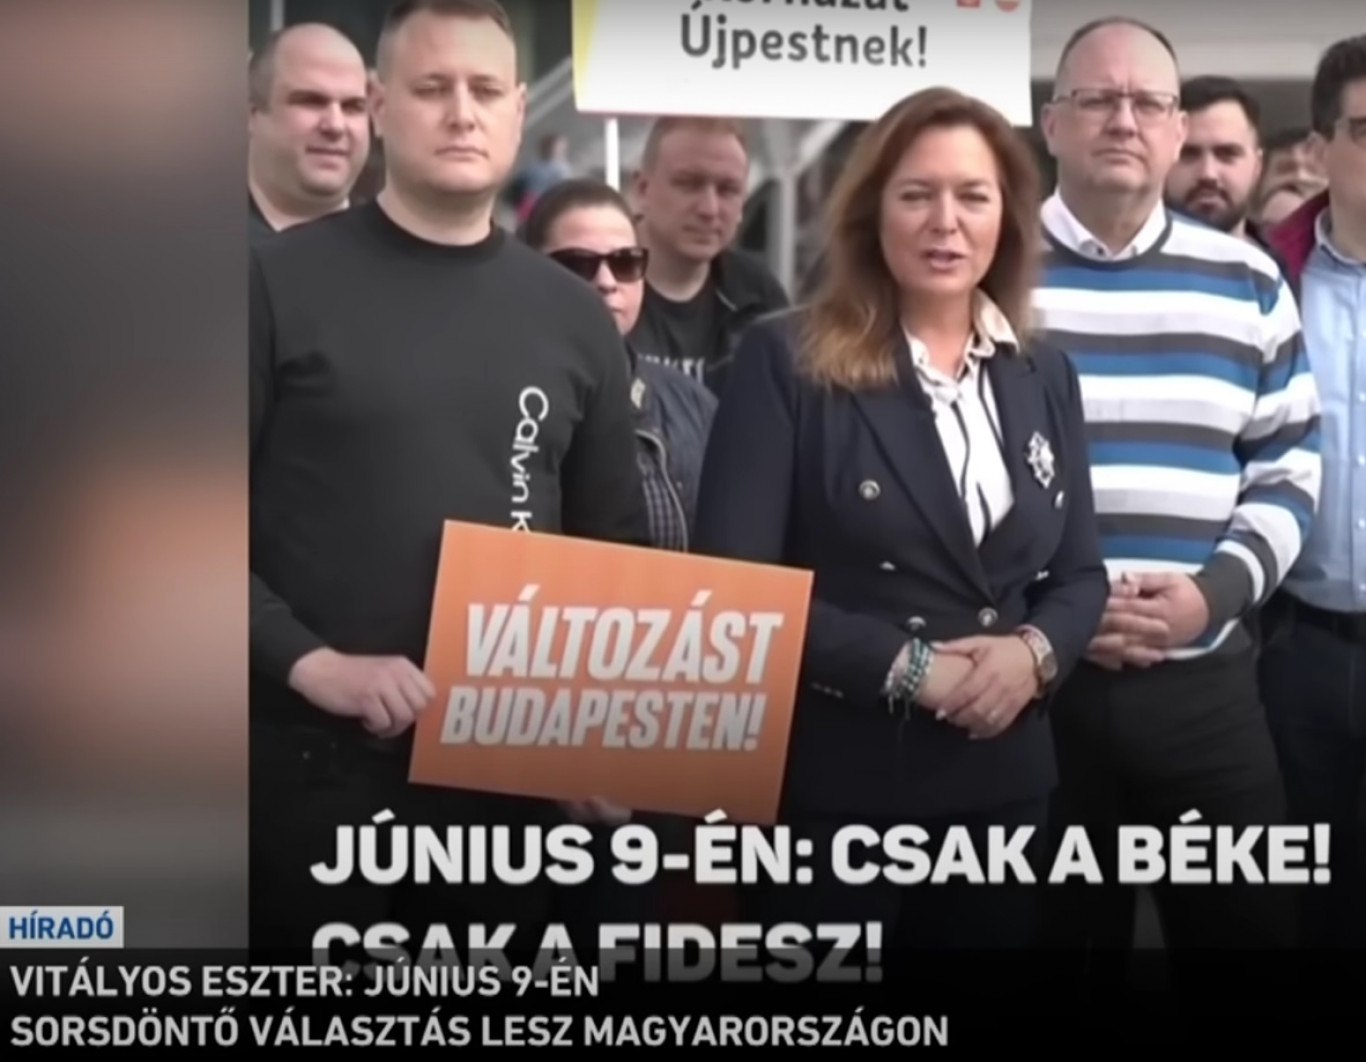 Szabályt sértett a köztévé, amikor a Fidesz politikai reklámját adta le híradós riportnak álcázva